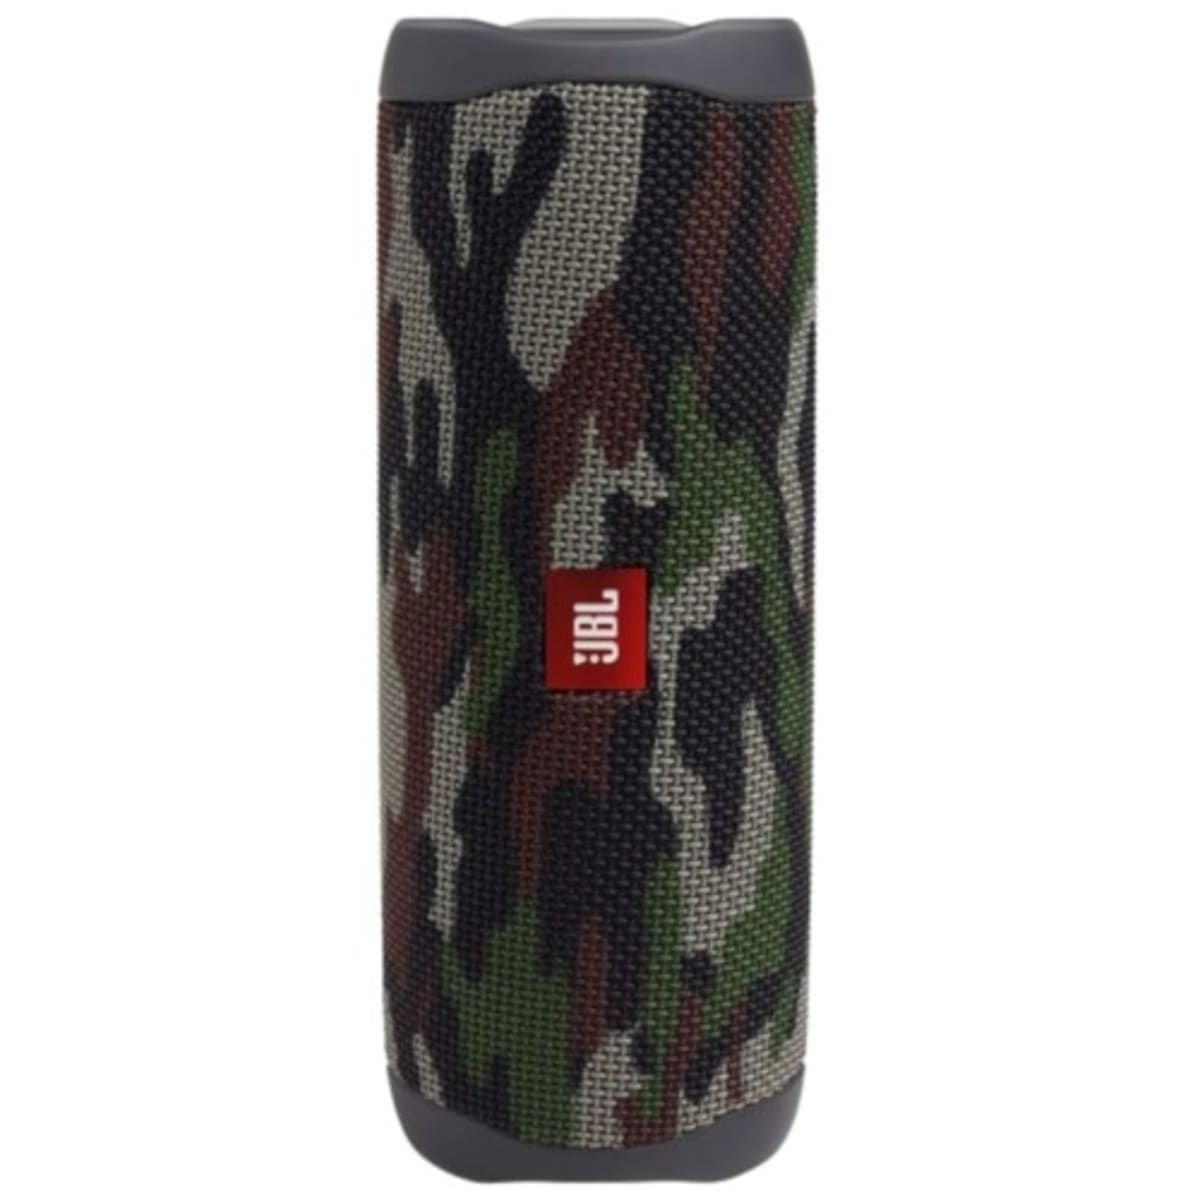 JBL Flip 5 Portable Waterproof Wireless Bluetooth Speaker - Camouflage 